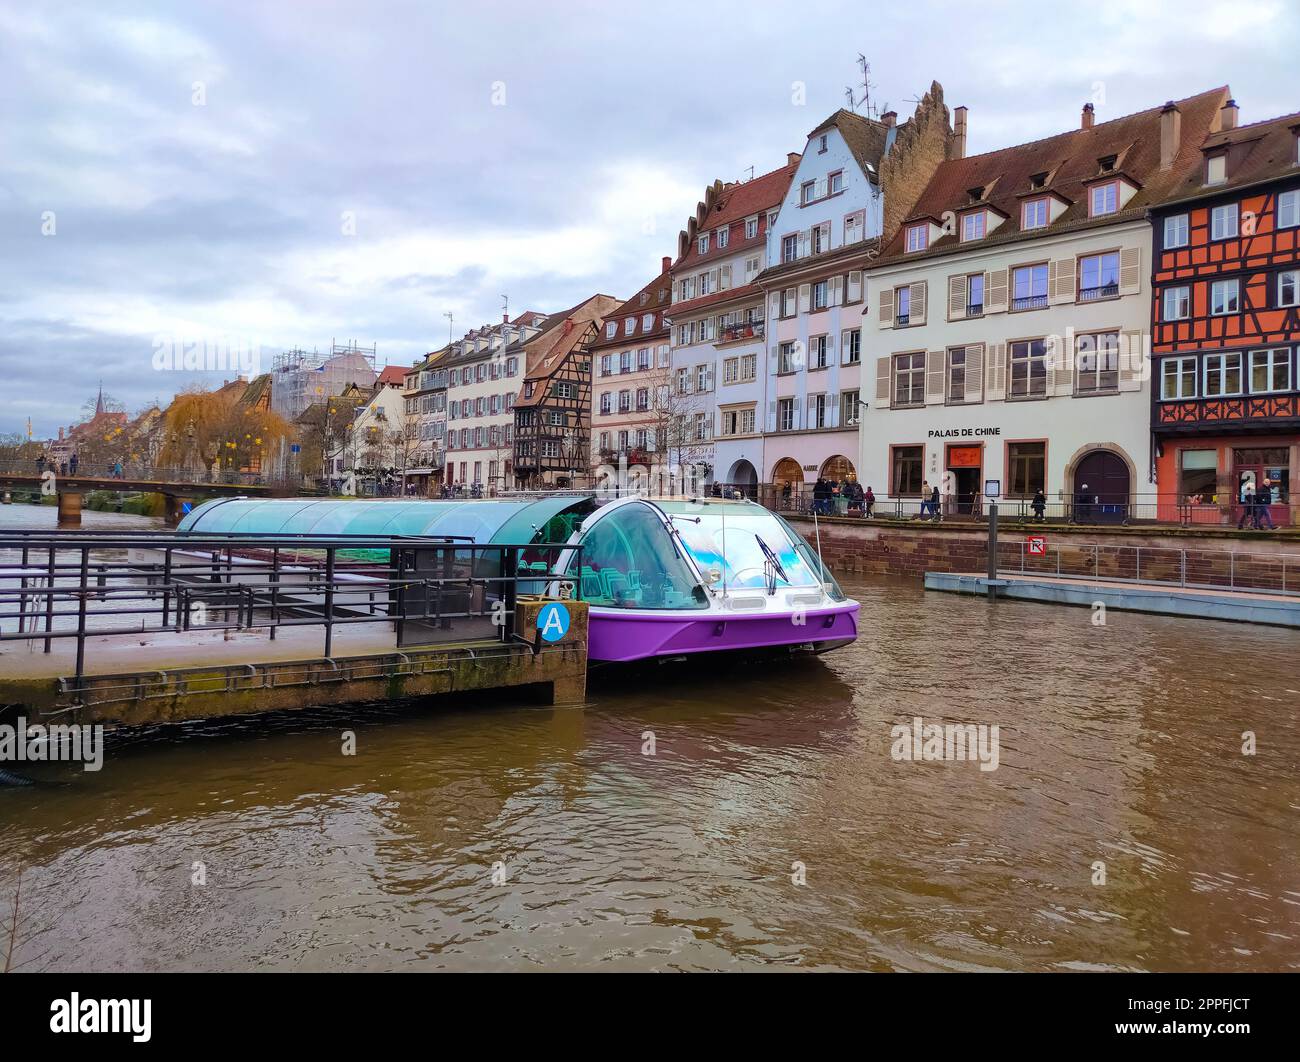 Tramway fluvial avec des touristes sur un canal d'eau sur le fond des maisons anciennes. Vue sur la rivière. Strasbourg ville, France. Destination touristique célèbre, voyage, tourisme Banque D'Images